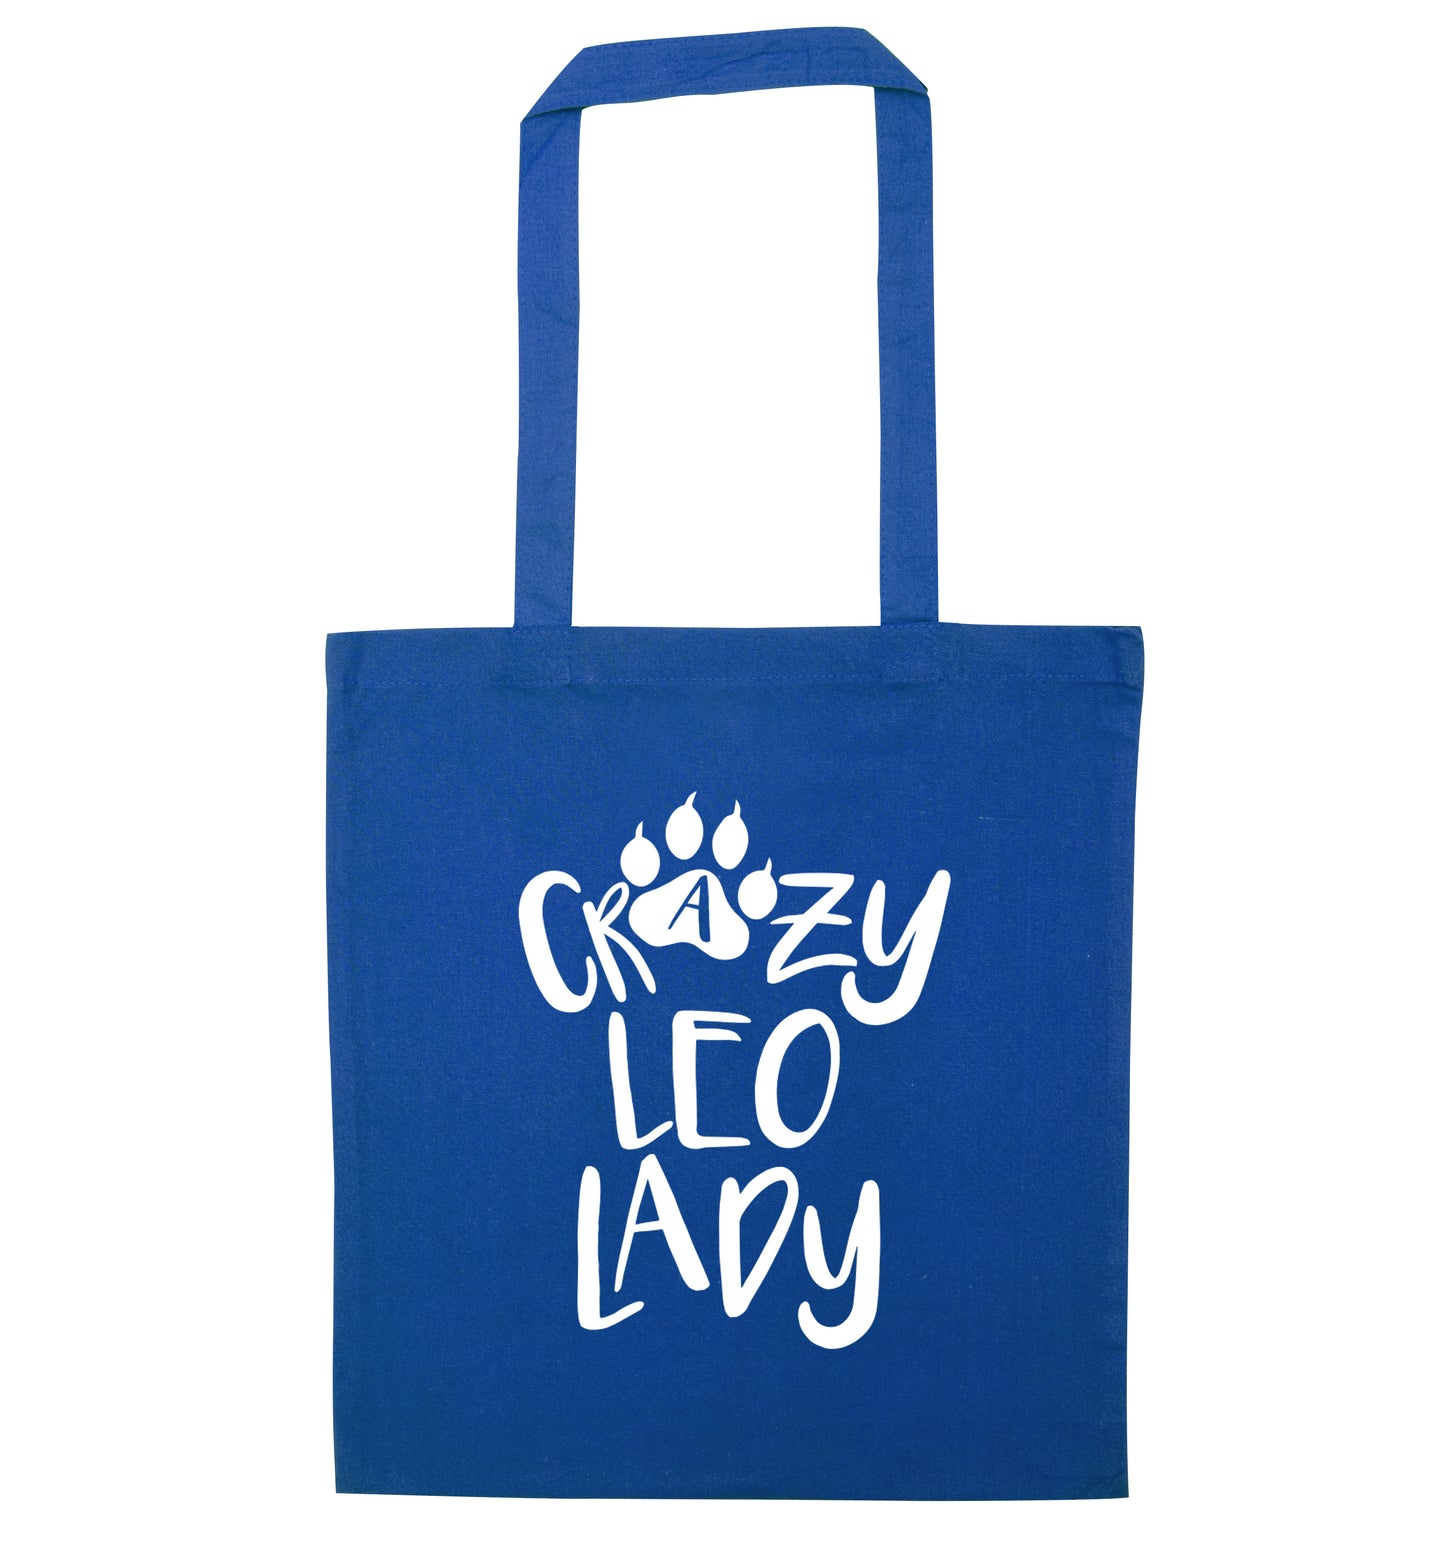 Crazy leo lady blue tote bag